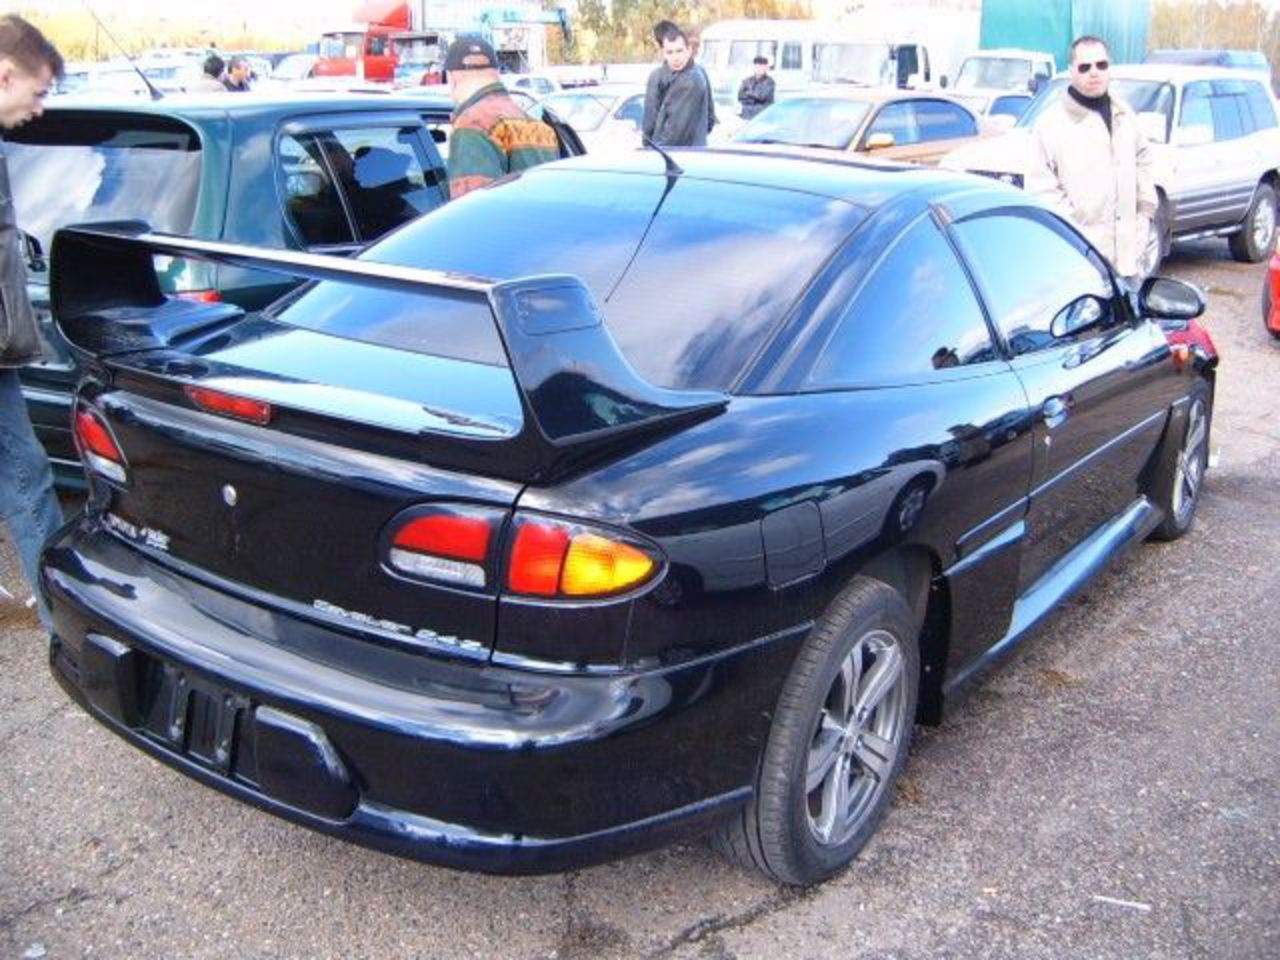 J forums. Toyota Cavalier 1997. Тойота кавалер 1996. Toyota Cavalier купе. Toyota Cavalier 2.4 в обвесе.